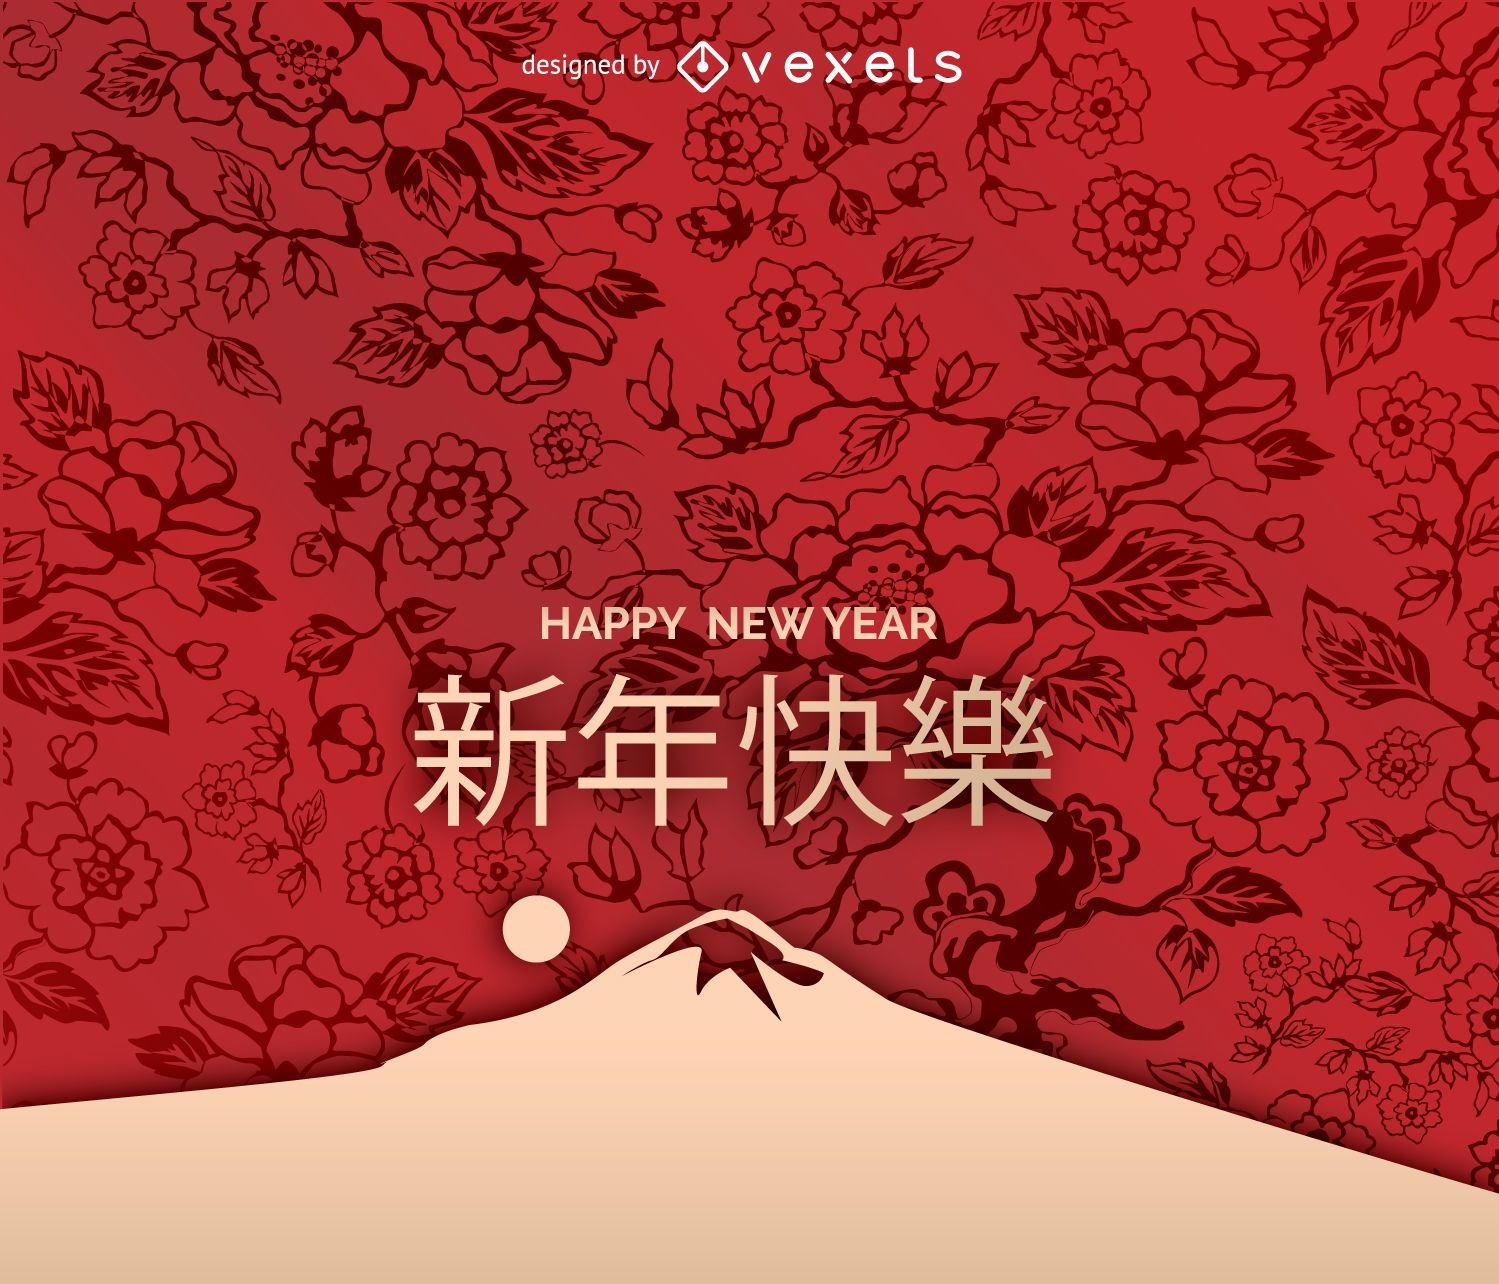 Arte do ano novo chinês